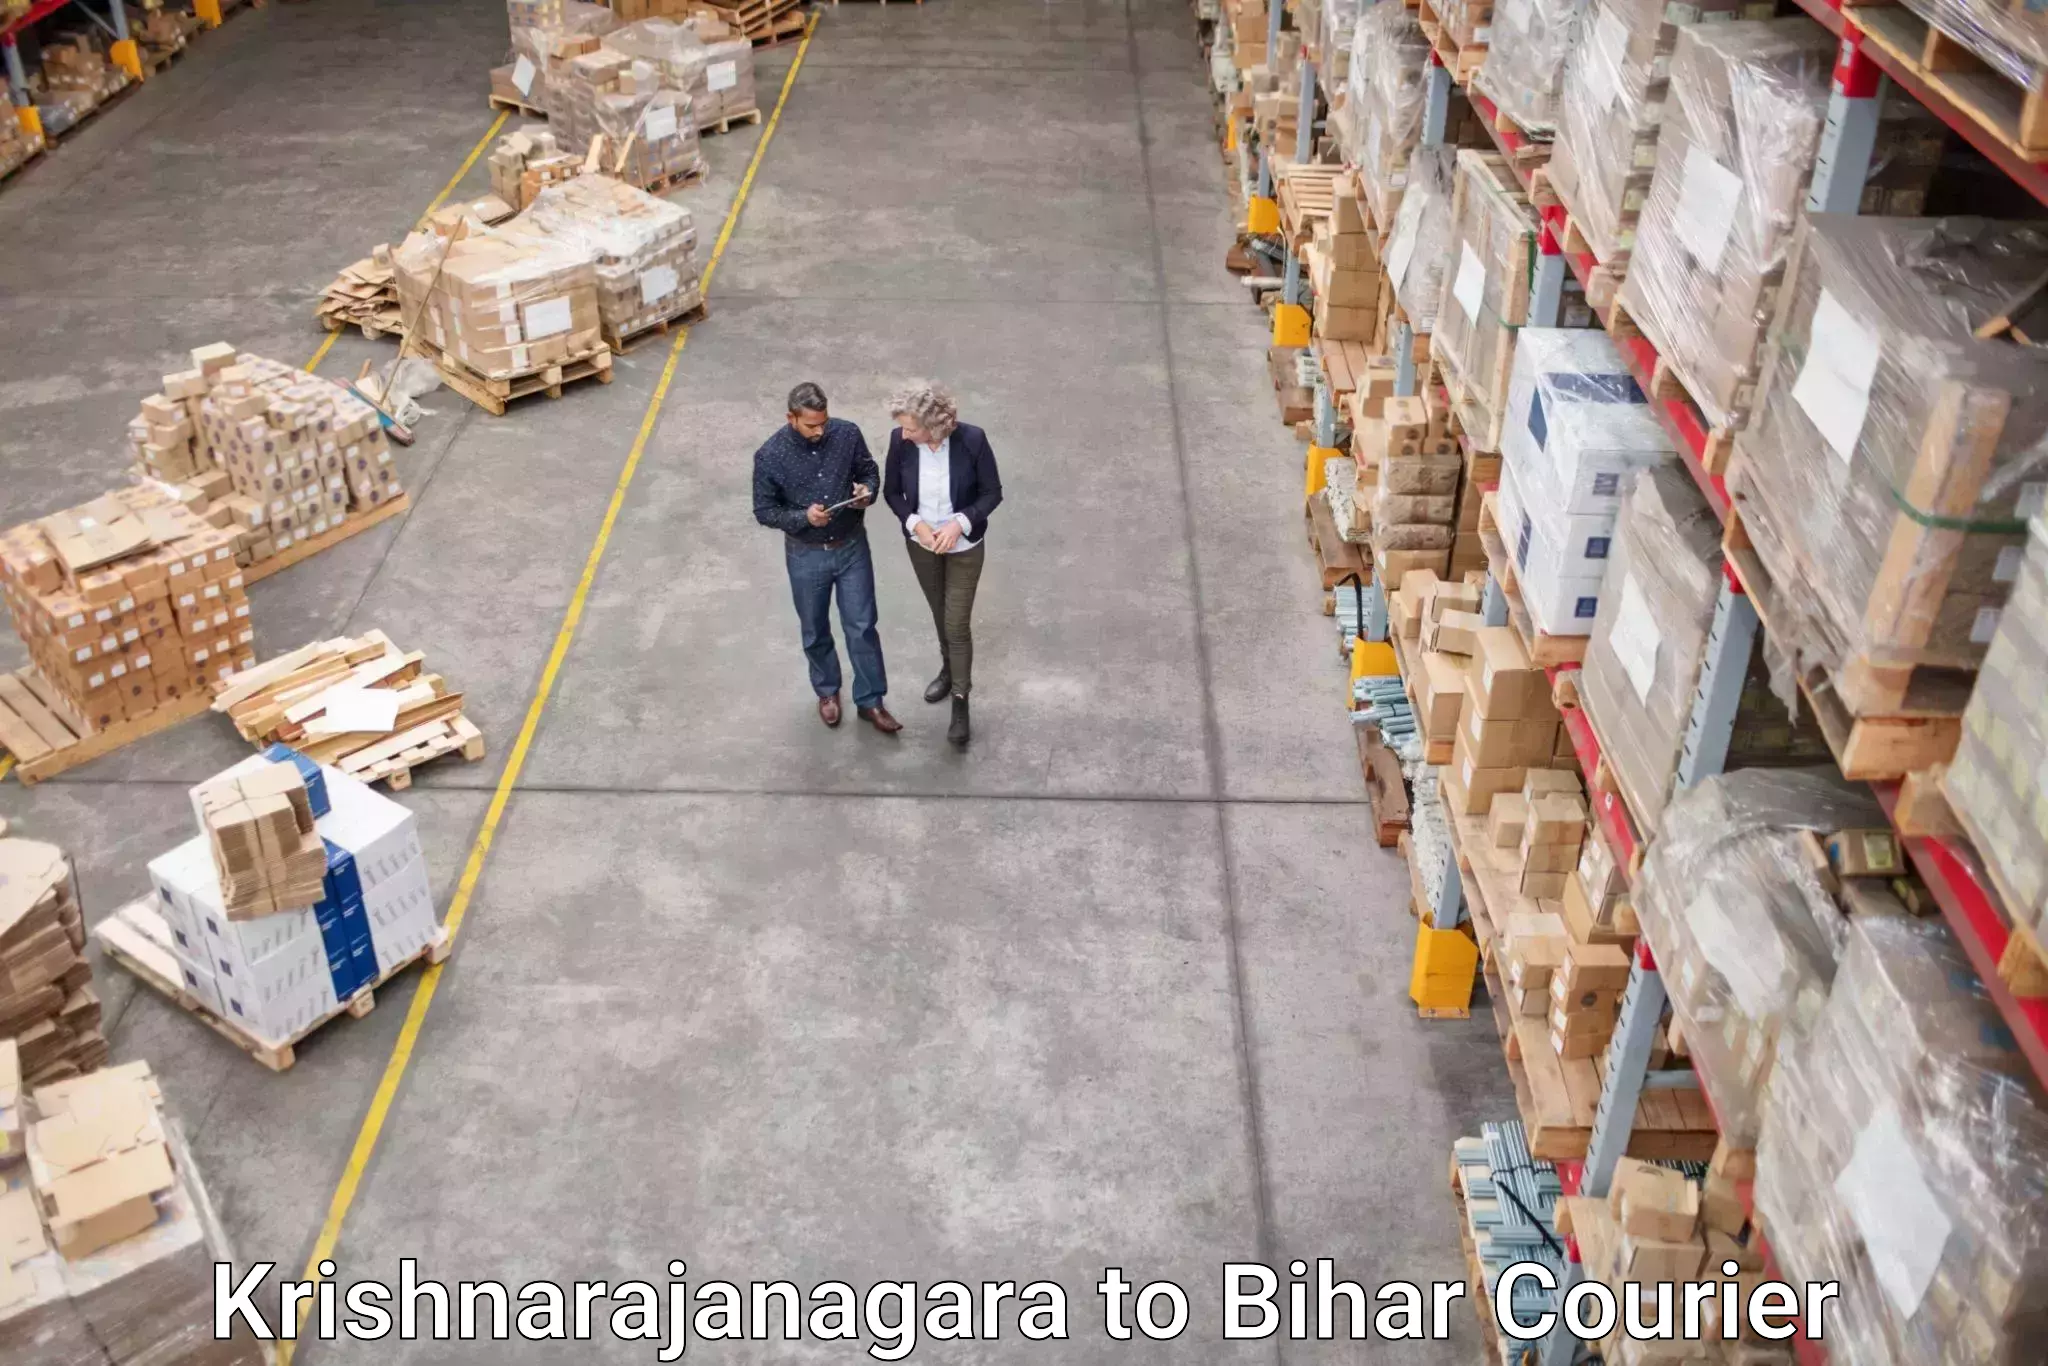 On-demand shipping options Krishnarajanagara to Maharajganj Vaishali